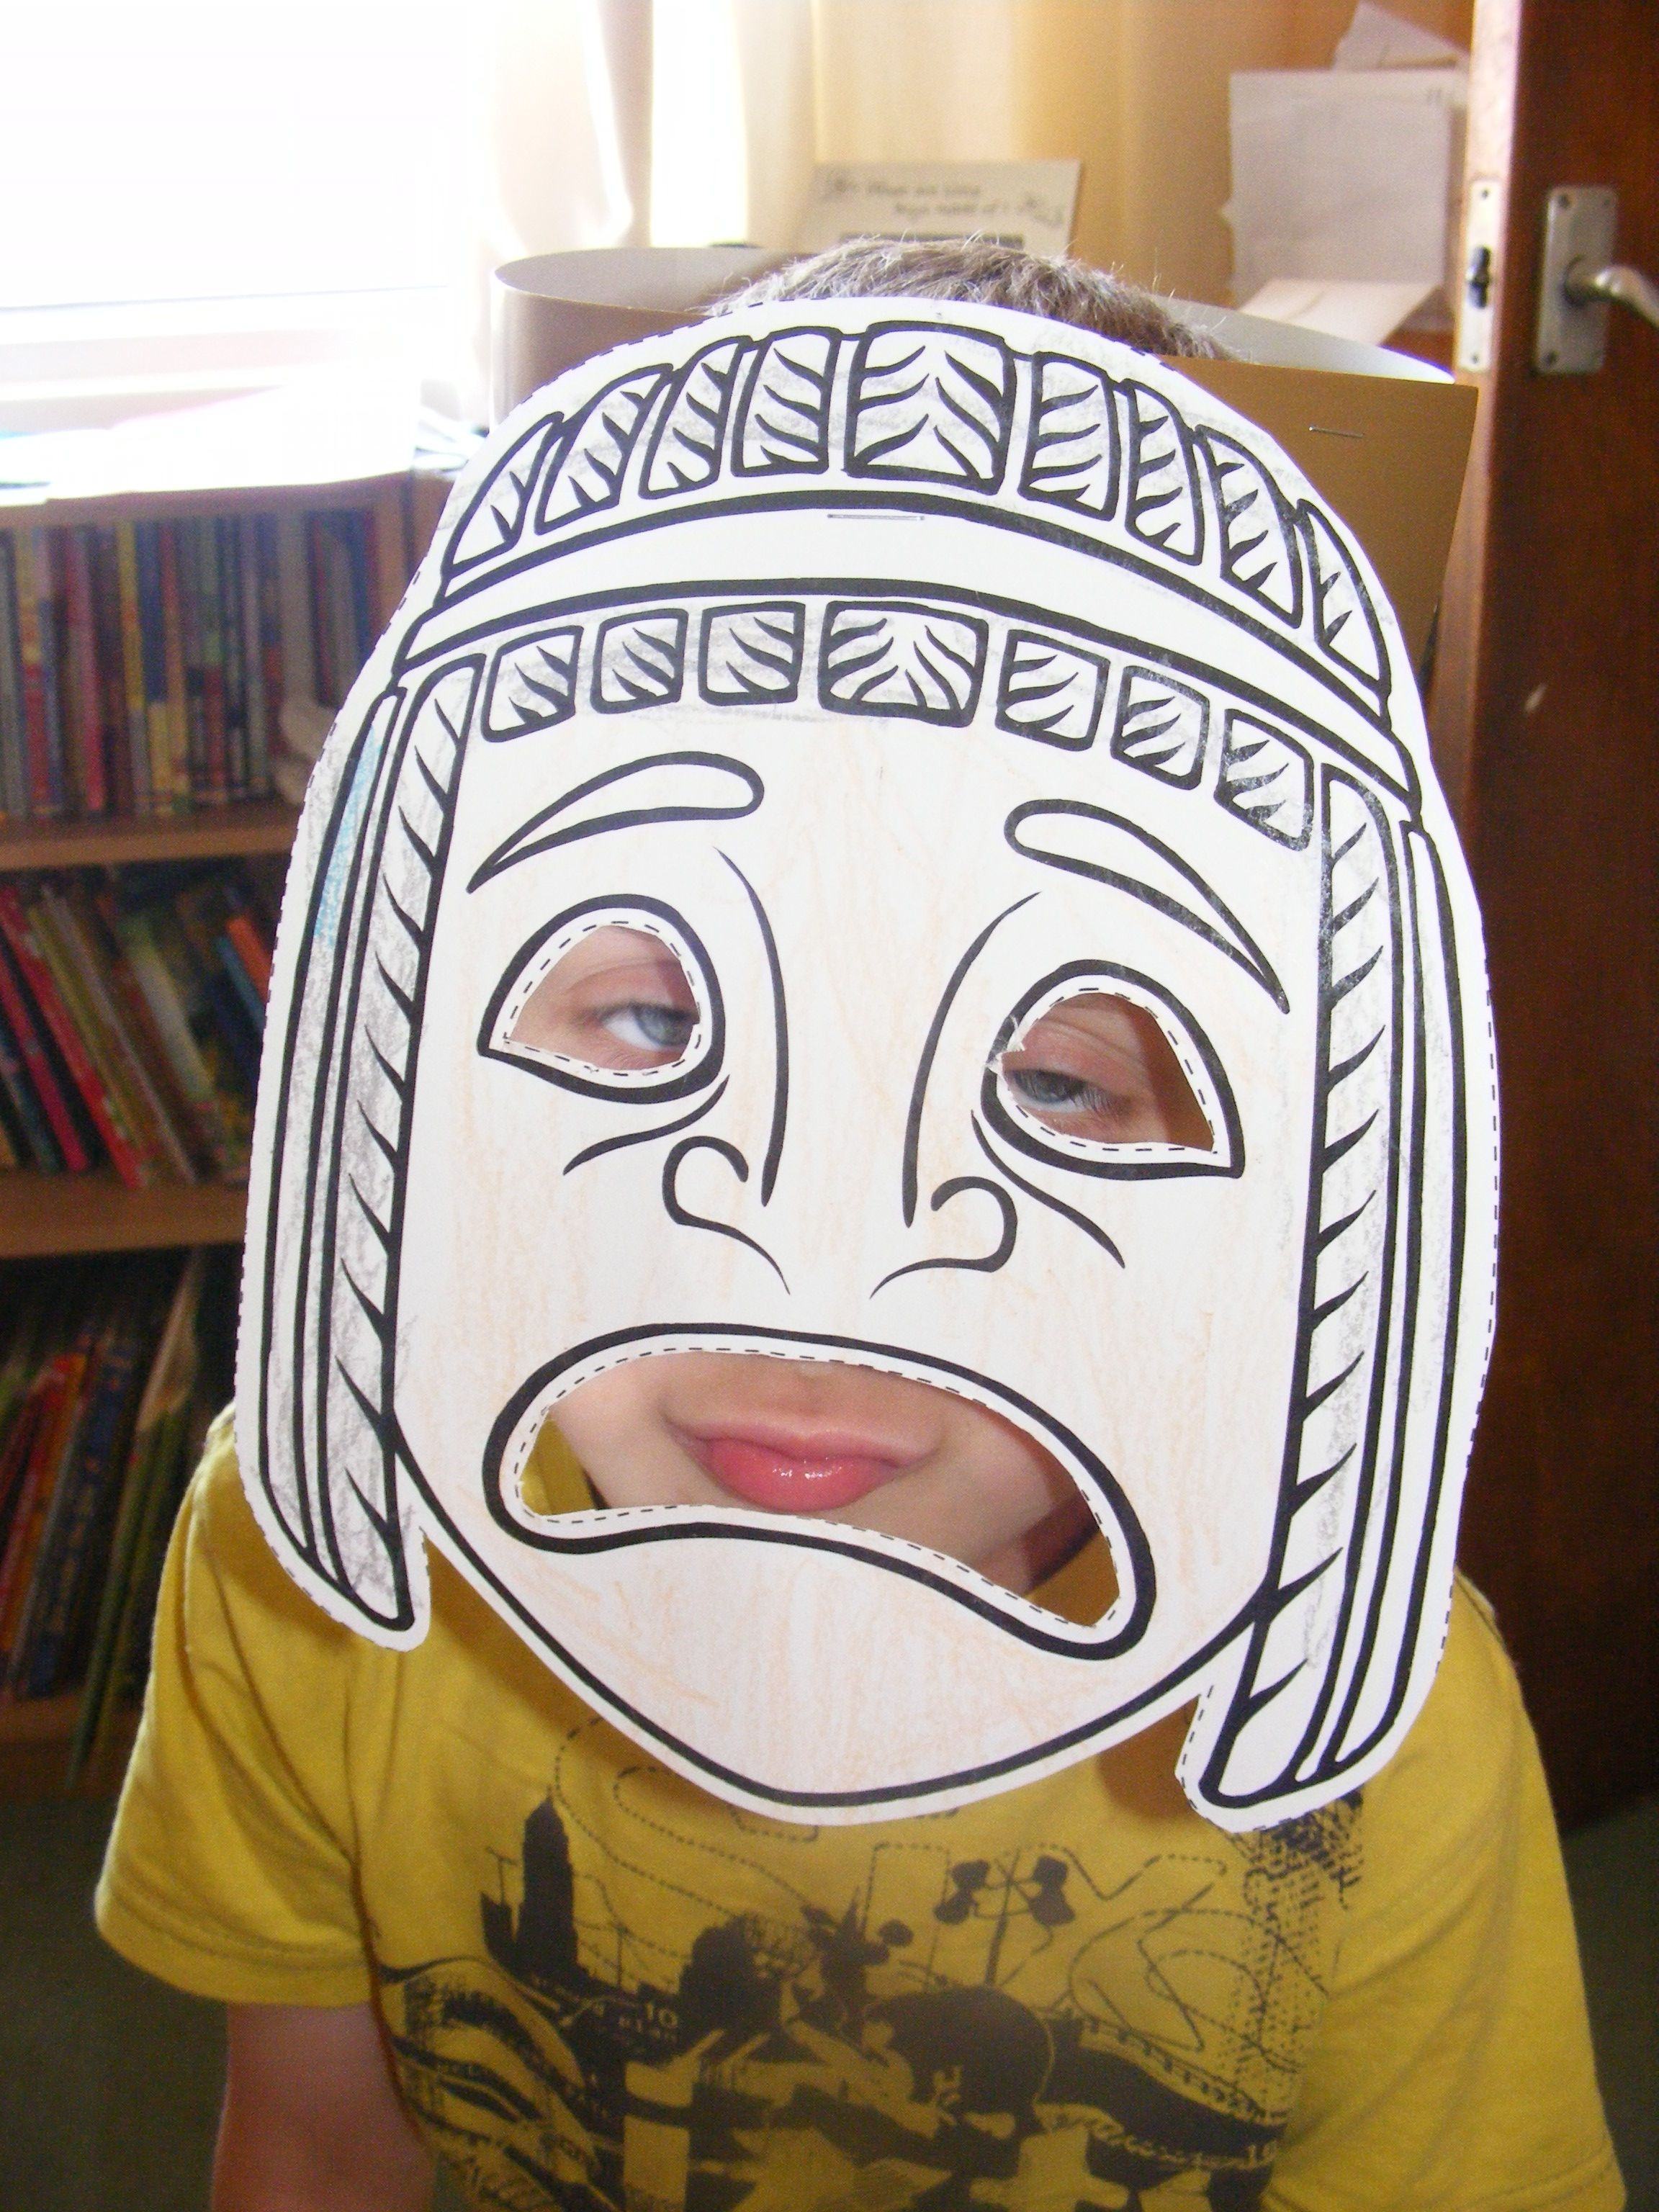 Красиво раскрасить маску. Идеи для масок. Маска Анонимуса Разрисованная маркером. Идеи для маски Анонимуса. Маски анонимусов разрисованные для девочек.